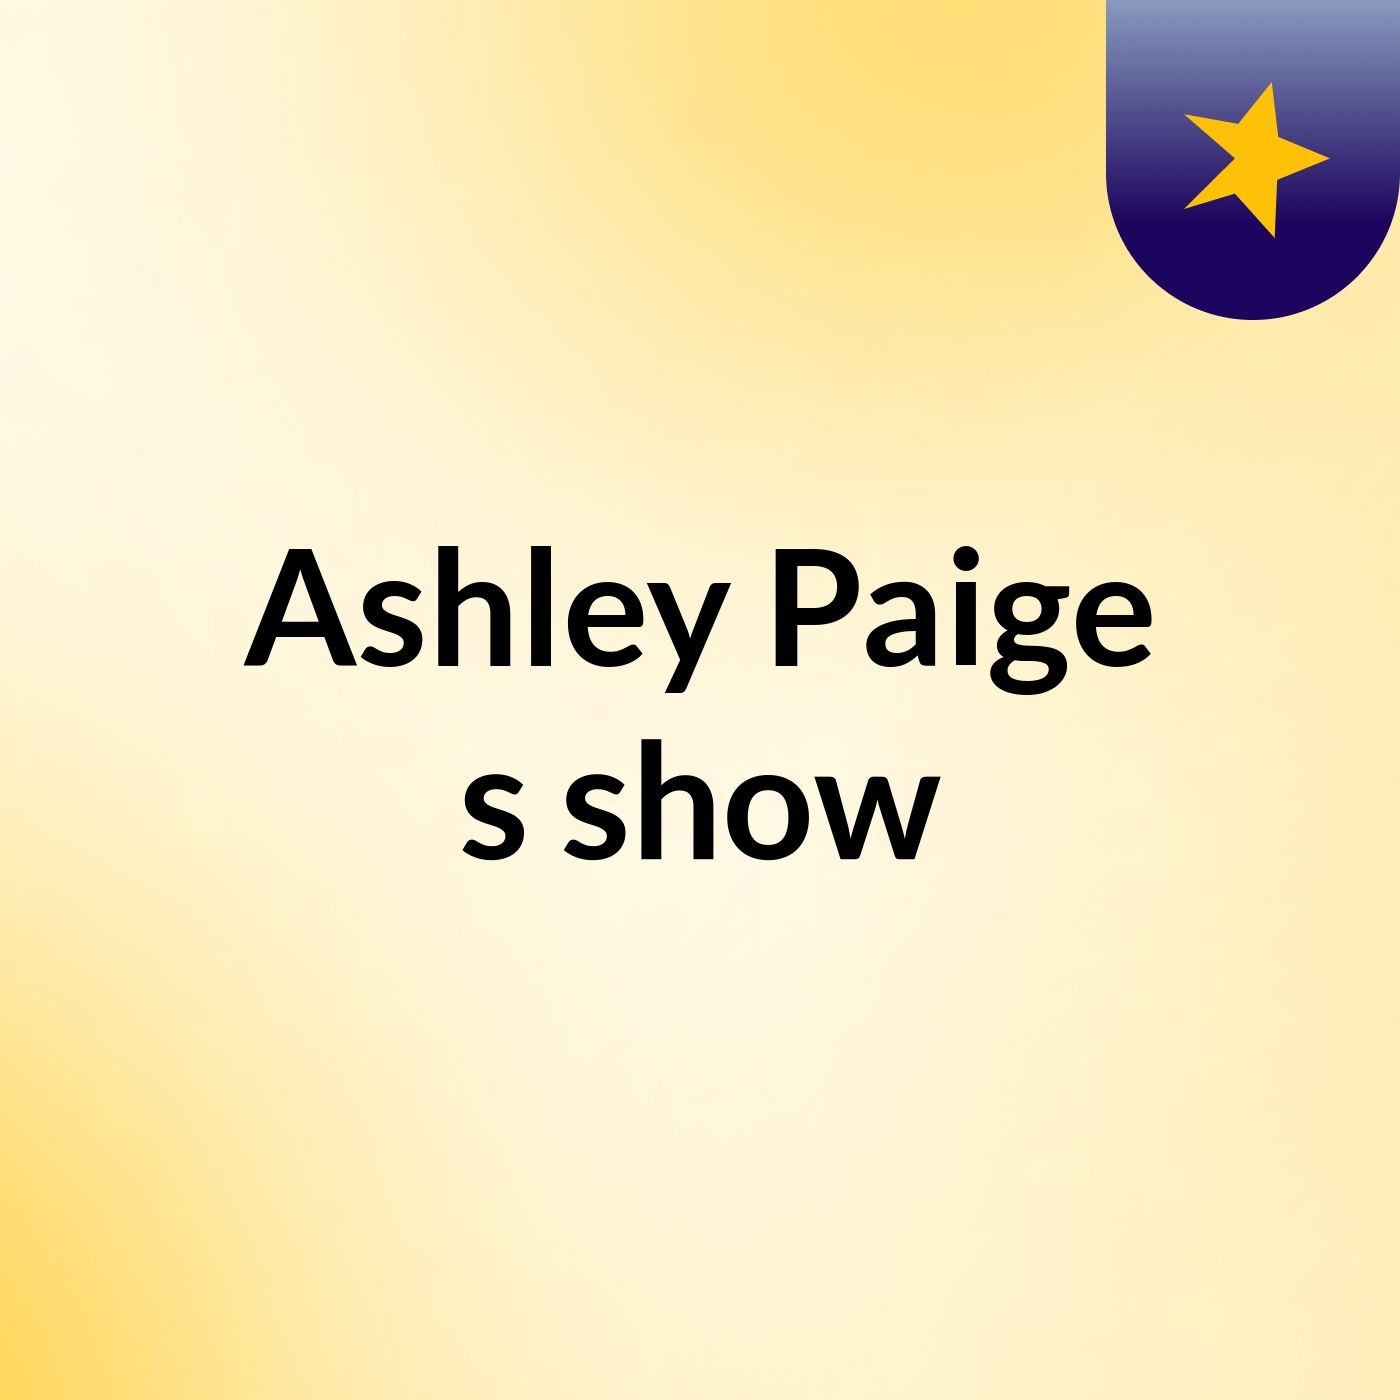 Ashley Paige's show